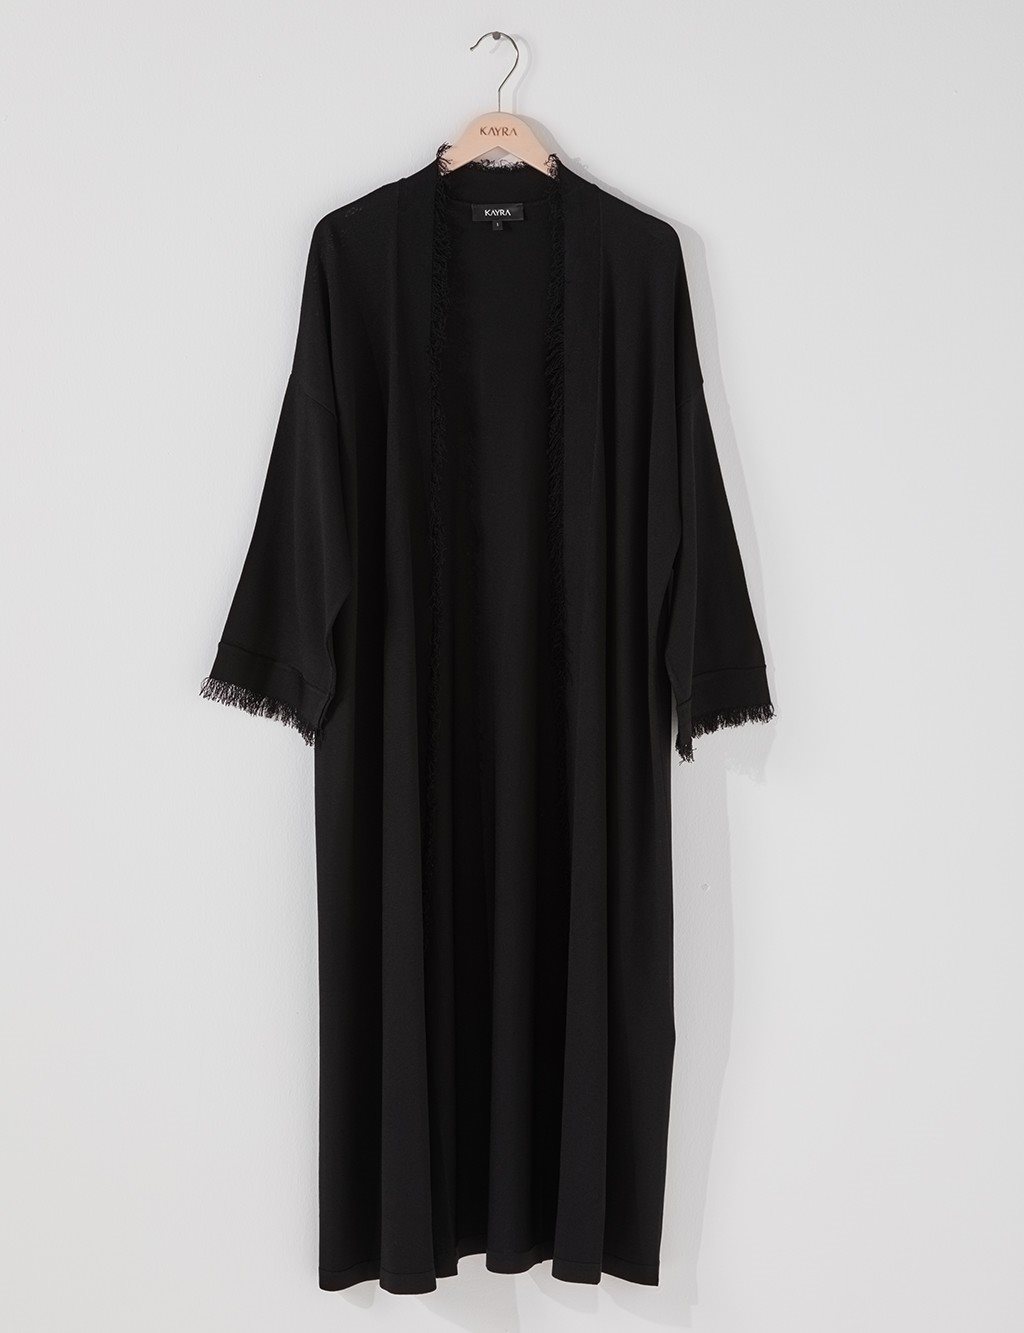 Tasseled Knit Cardigan B21 TRK02 Black